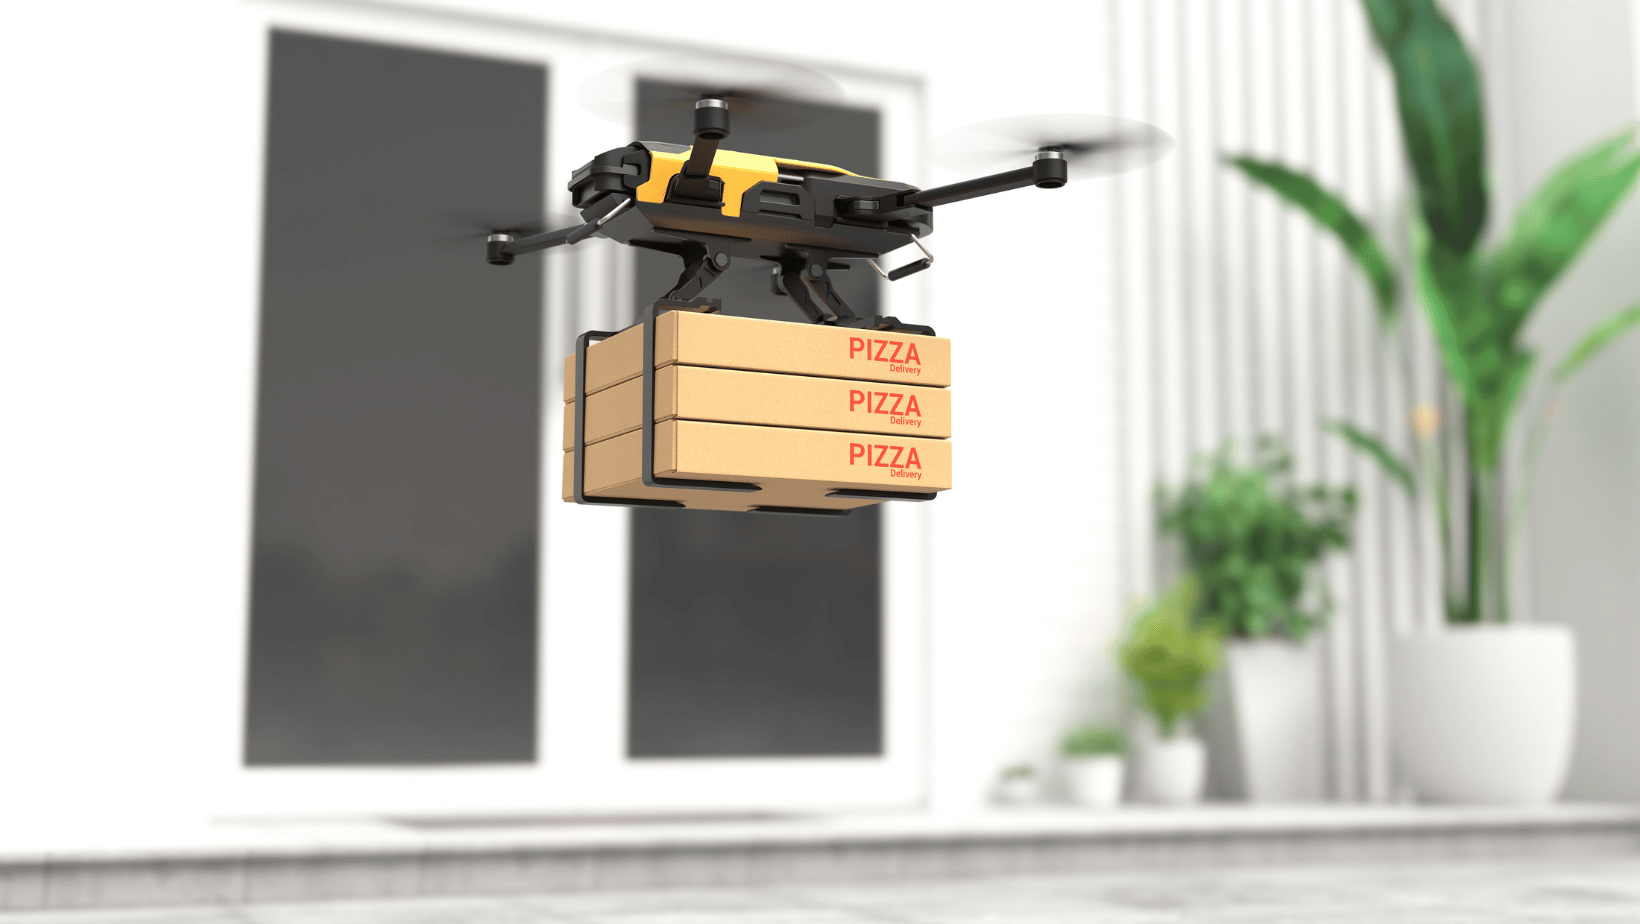 Drone delivering pizzas.